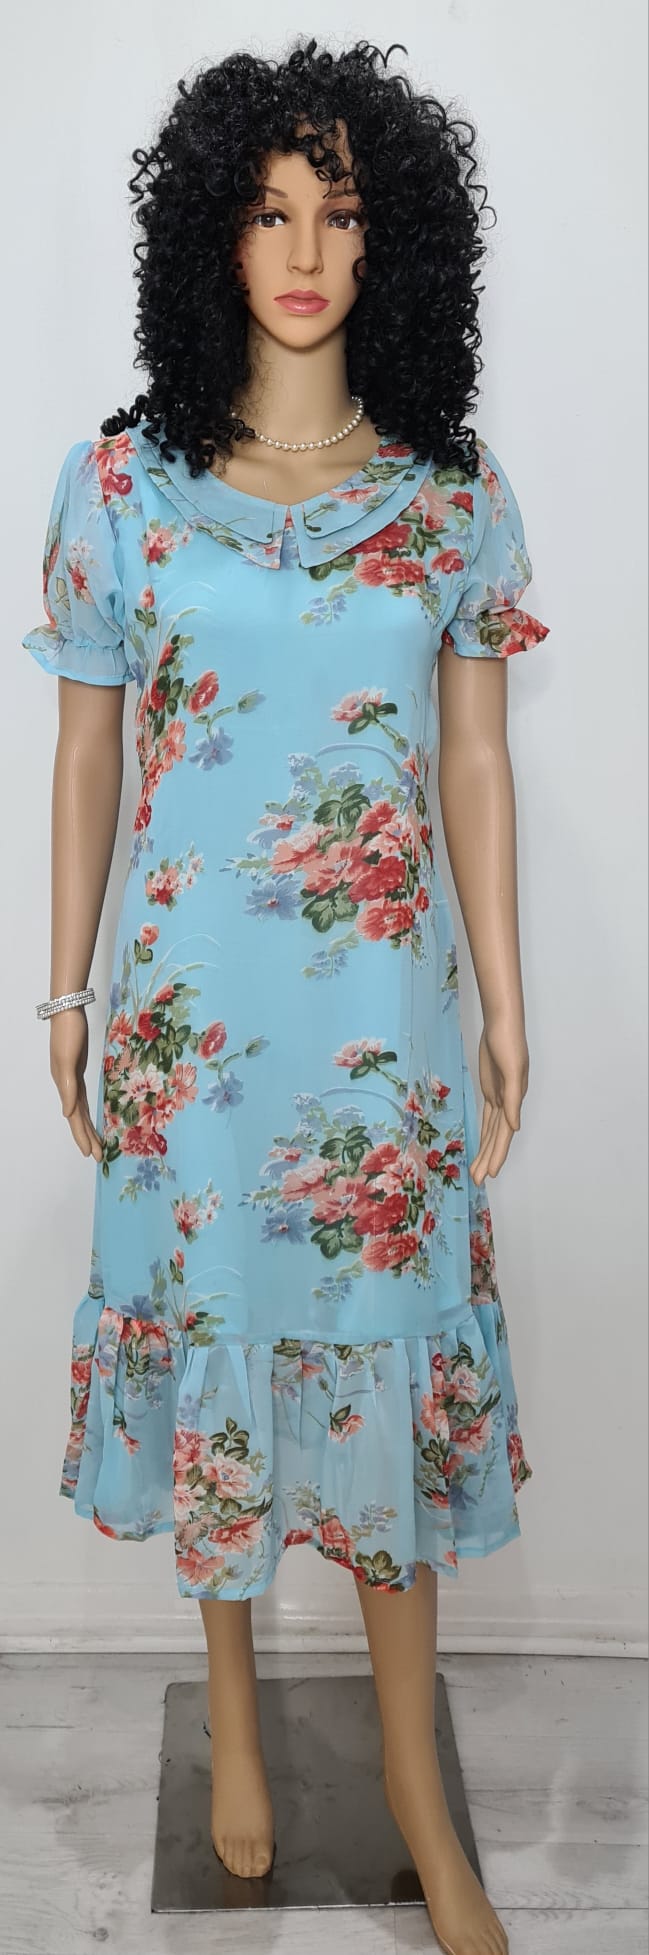 Floral printed chiffon Dress / western wear